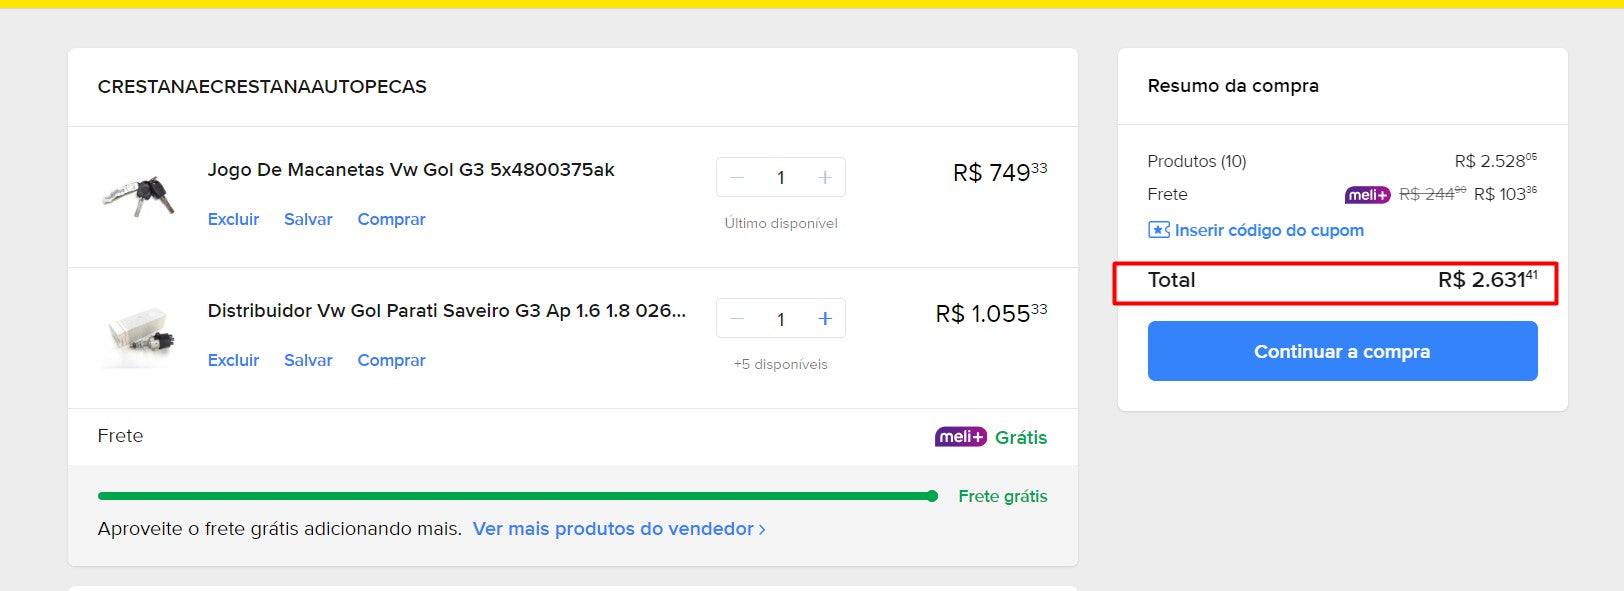 المتسوق الشخصي | شراء من البرازيل - قطع غيار السيارات - 11 سلعة (DDP)